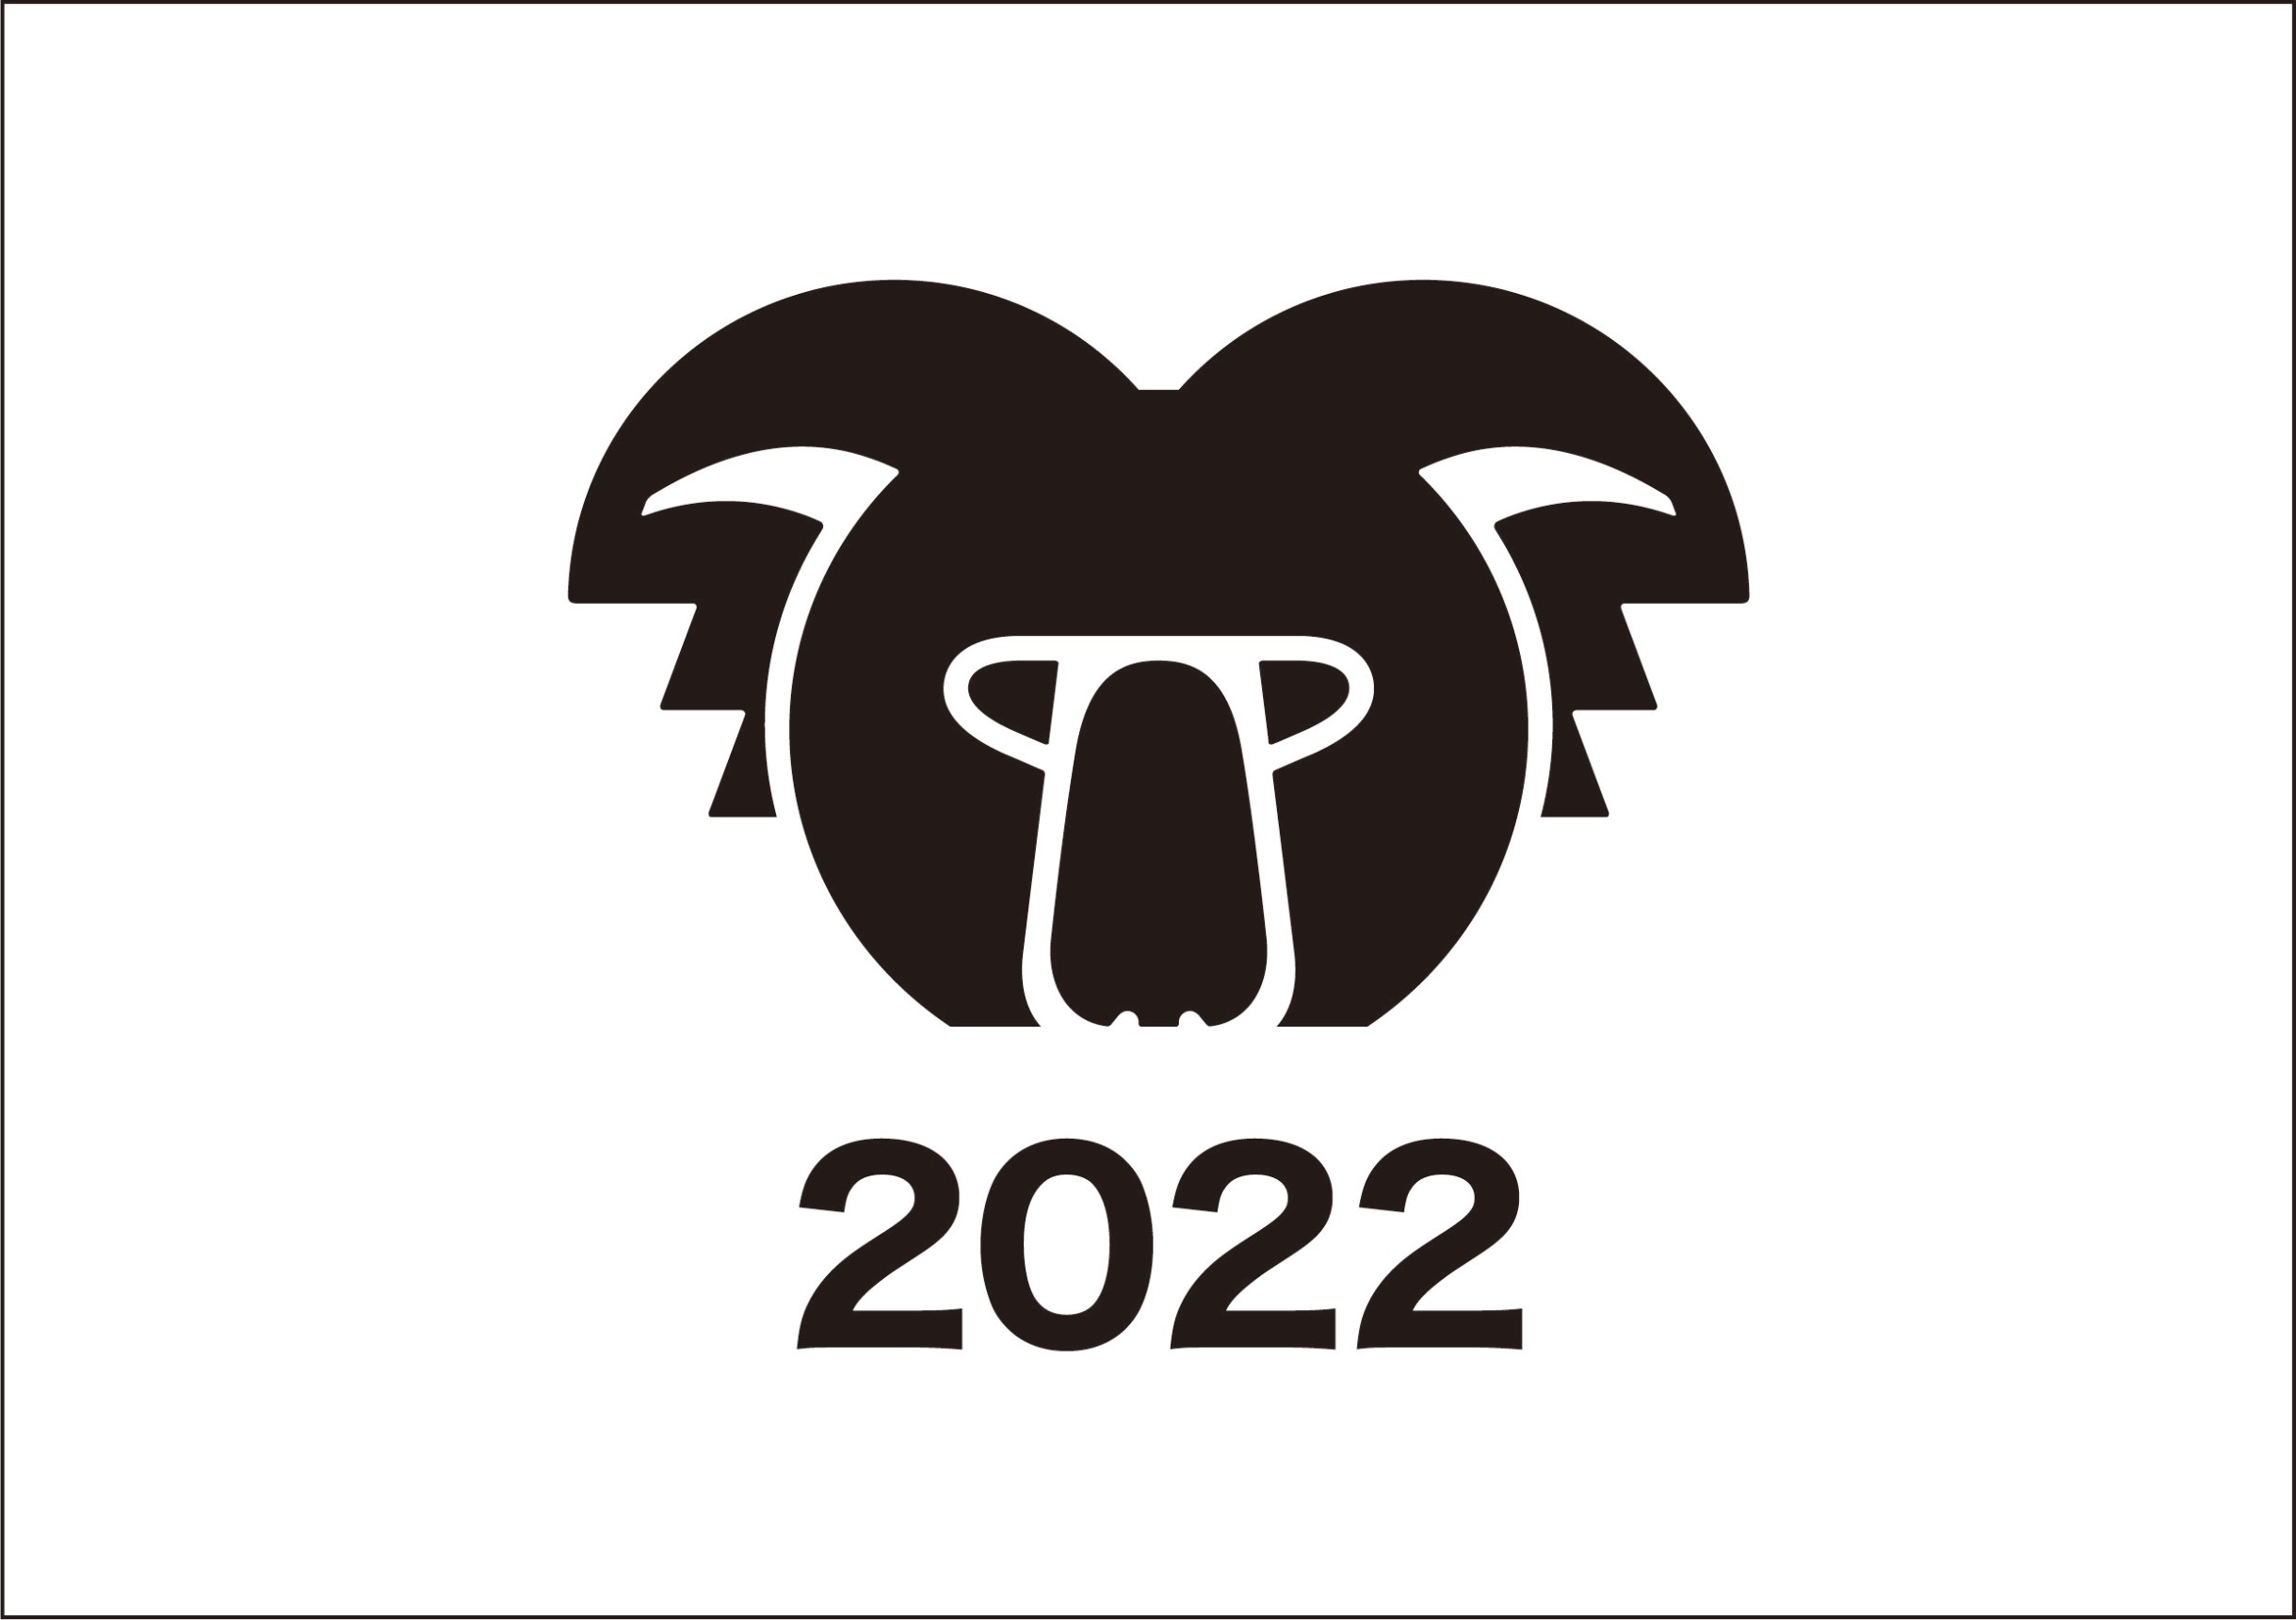 KOARA NEW YEAR PARTY 2022 